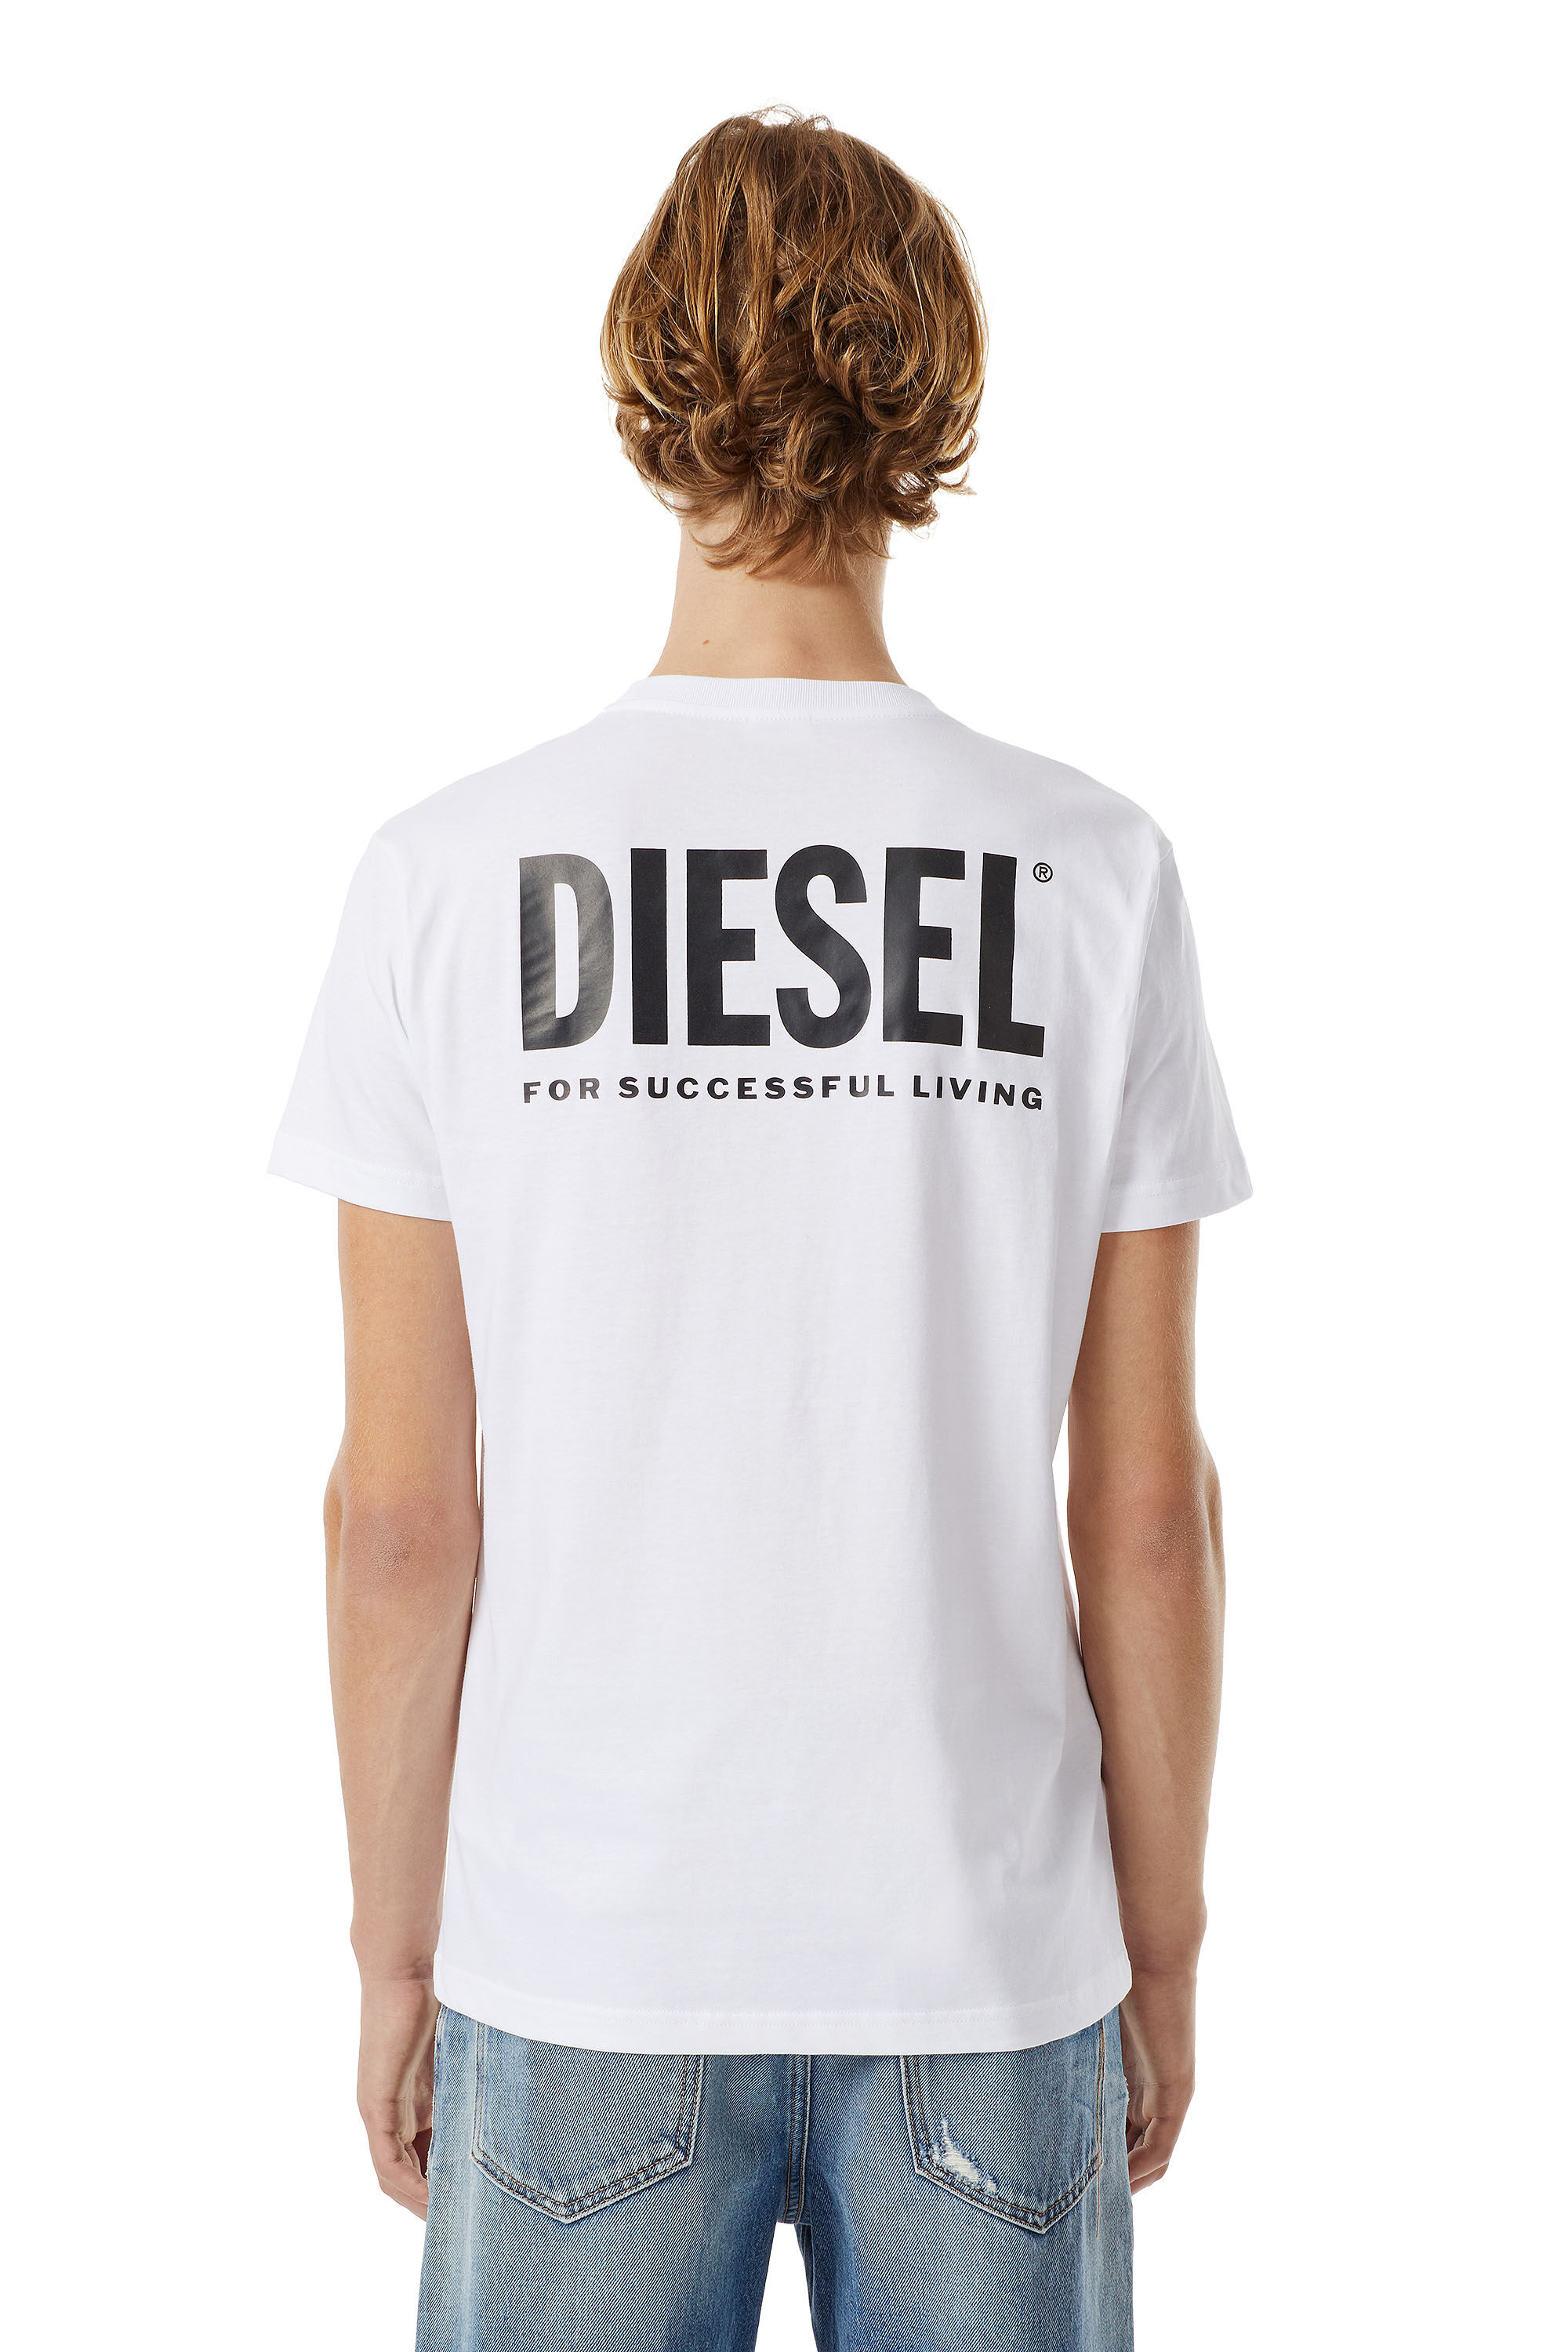 Diesel - LR-T-DIEGO-VIC, Bianco - Image 3